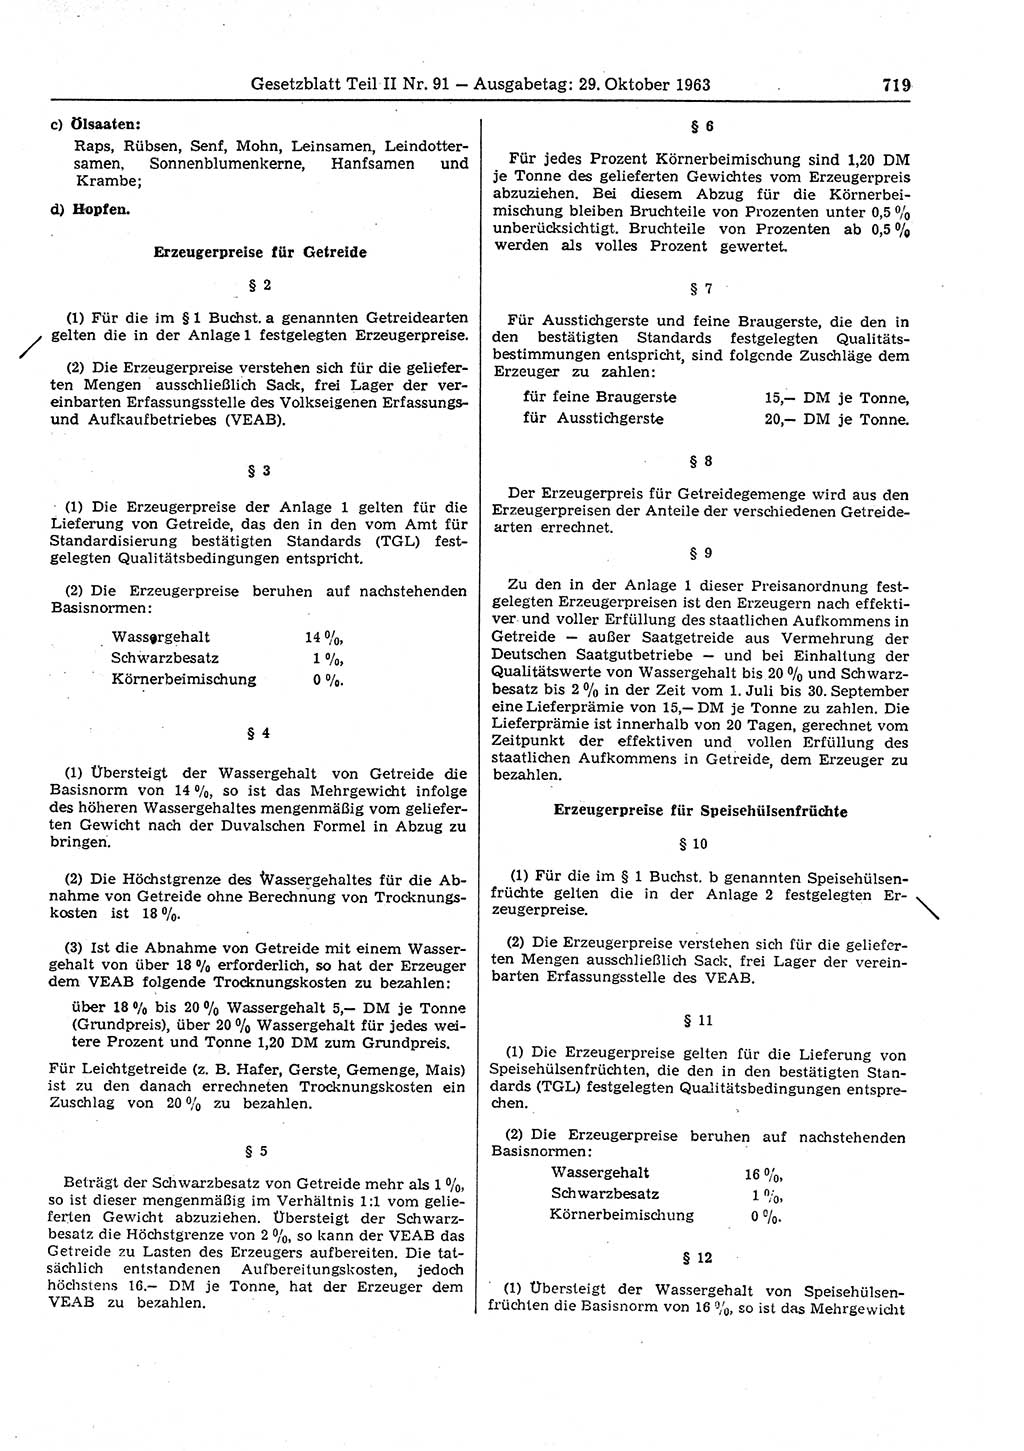 Gesetzblatt (GBl.) der Deutschen Demokratischen Republik (DDR) Teil ⅠⅠ 1963, Seite 719 (GBl. DDR ⅠⅠ 1963, S. 719)